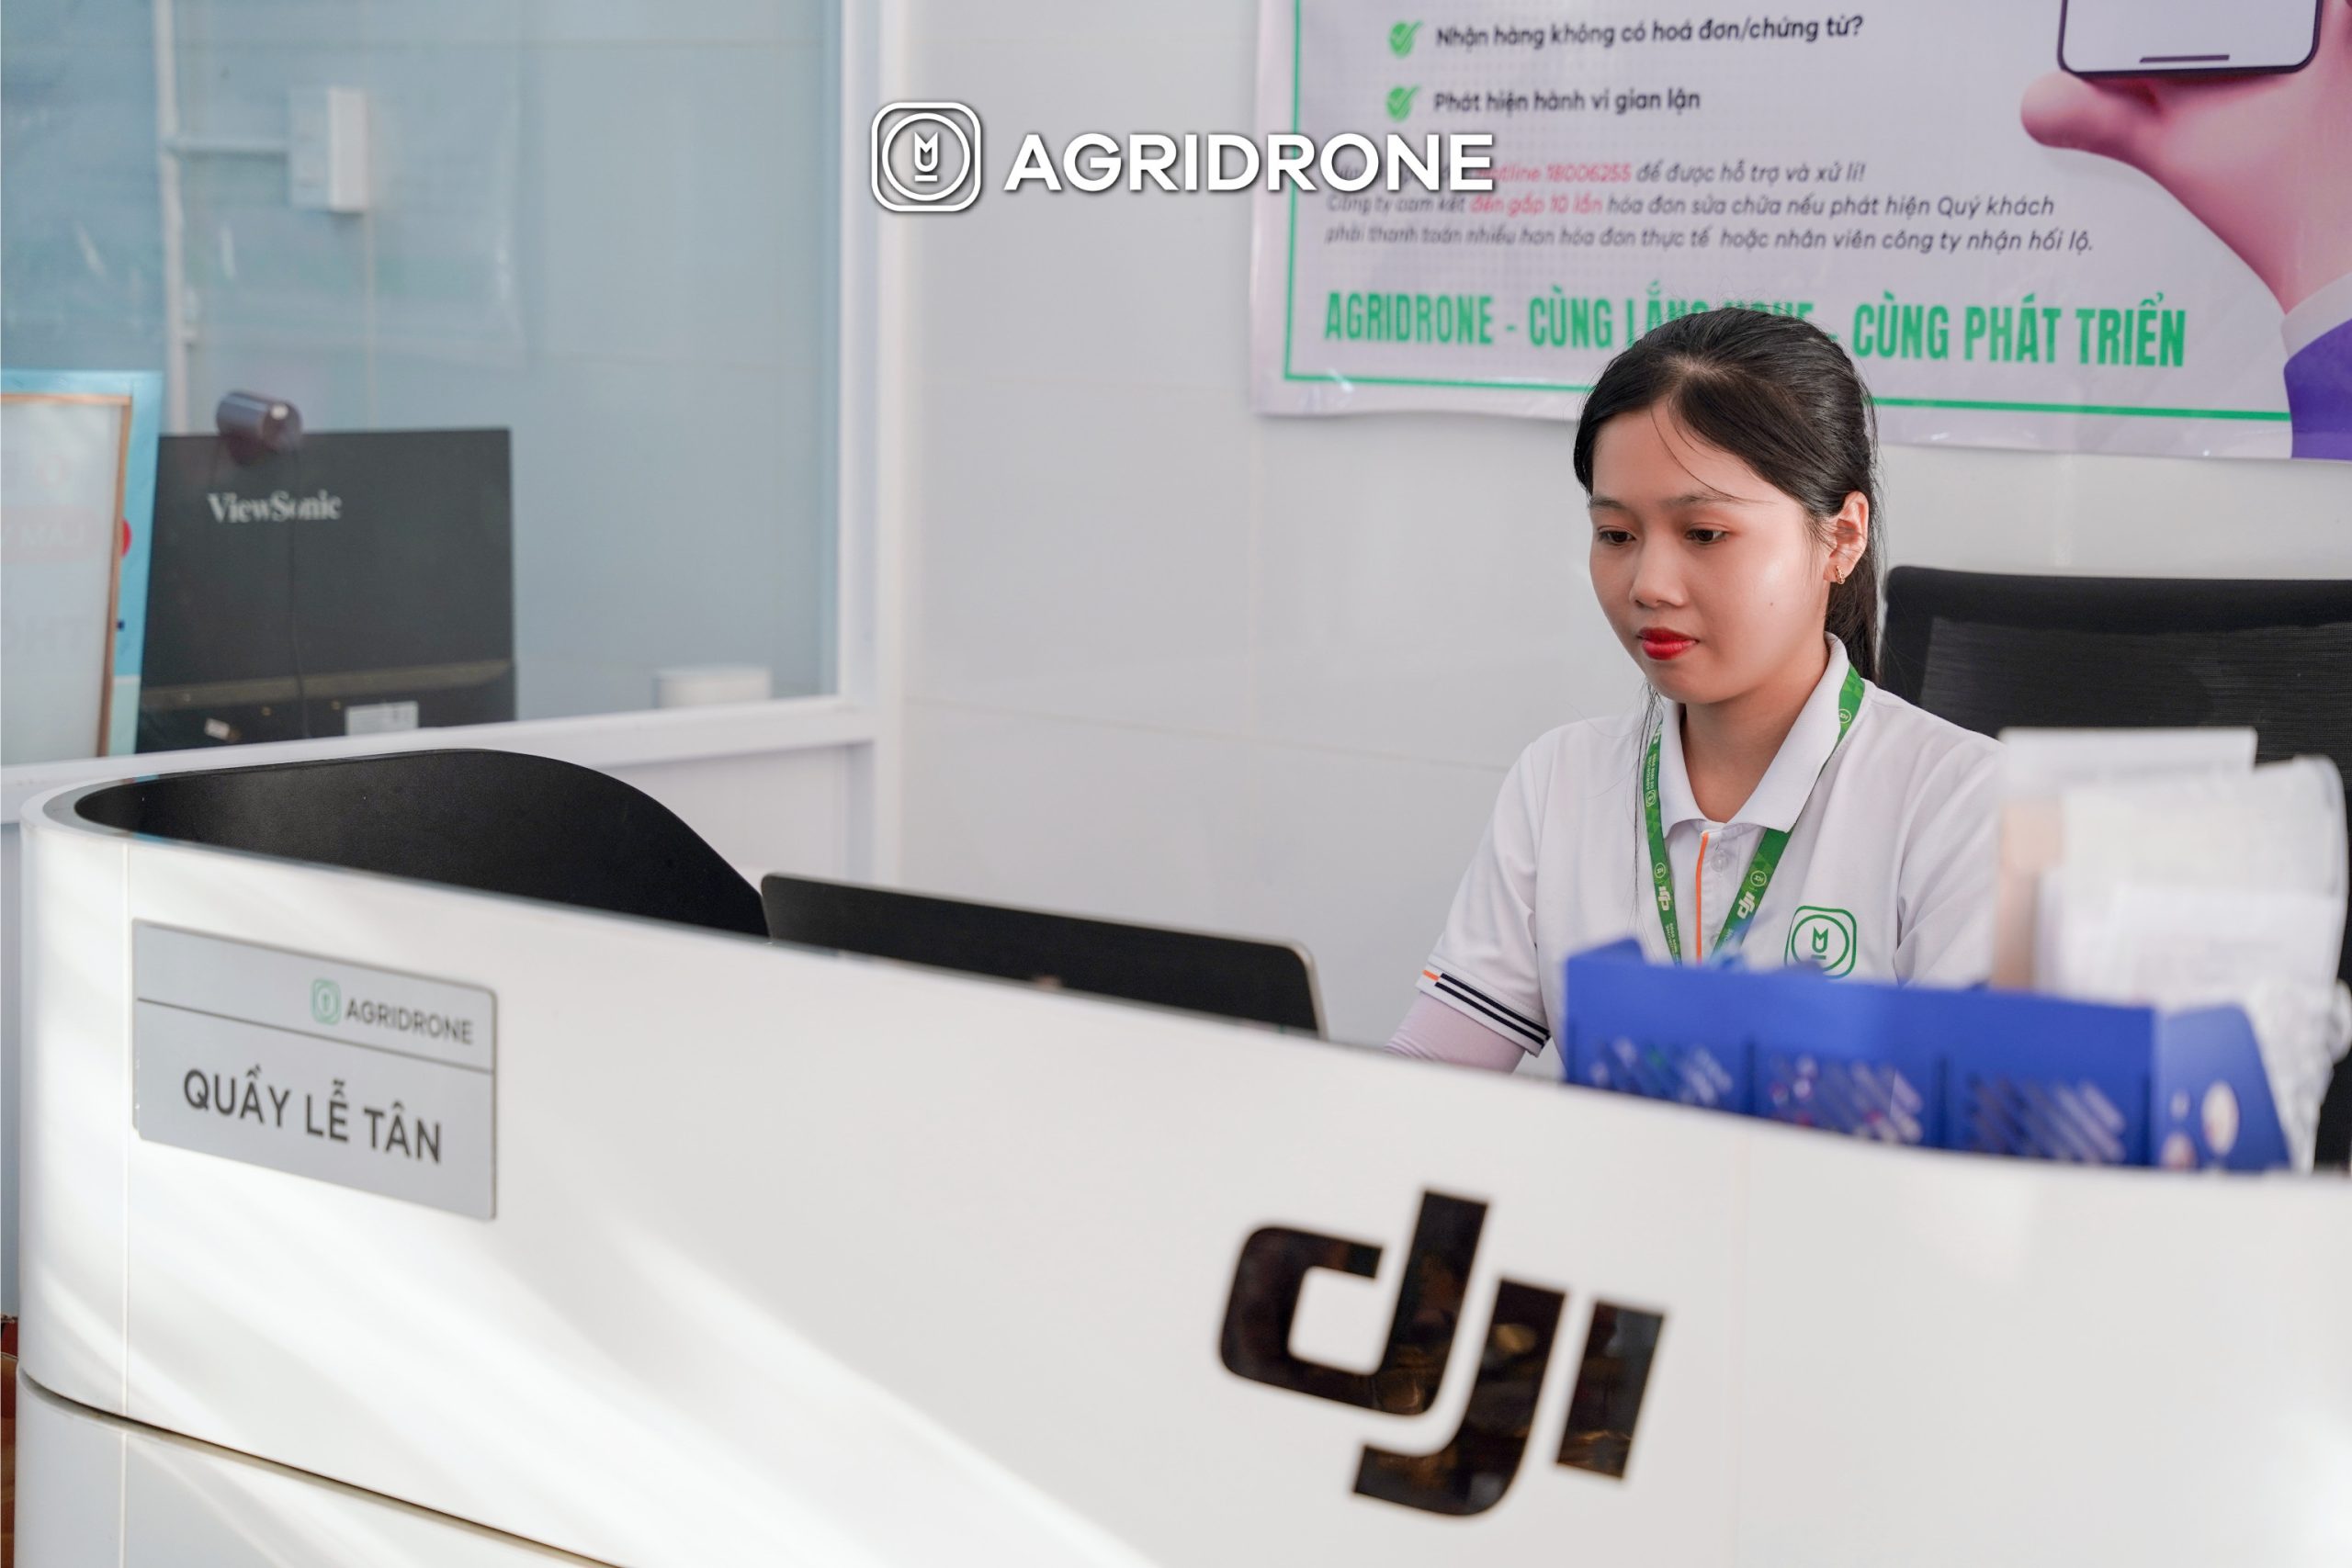 AgriDrone Việt Nam xem khách hàng là người thân trong gia đình